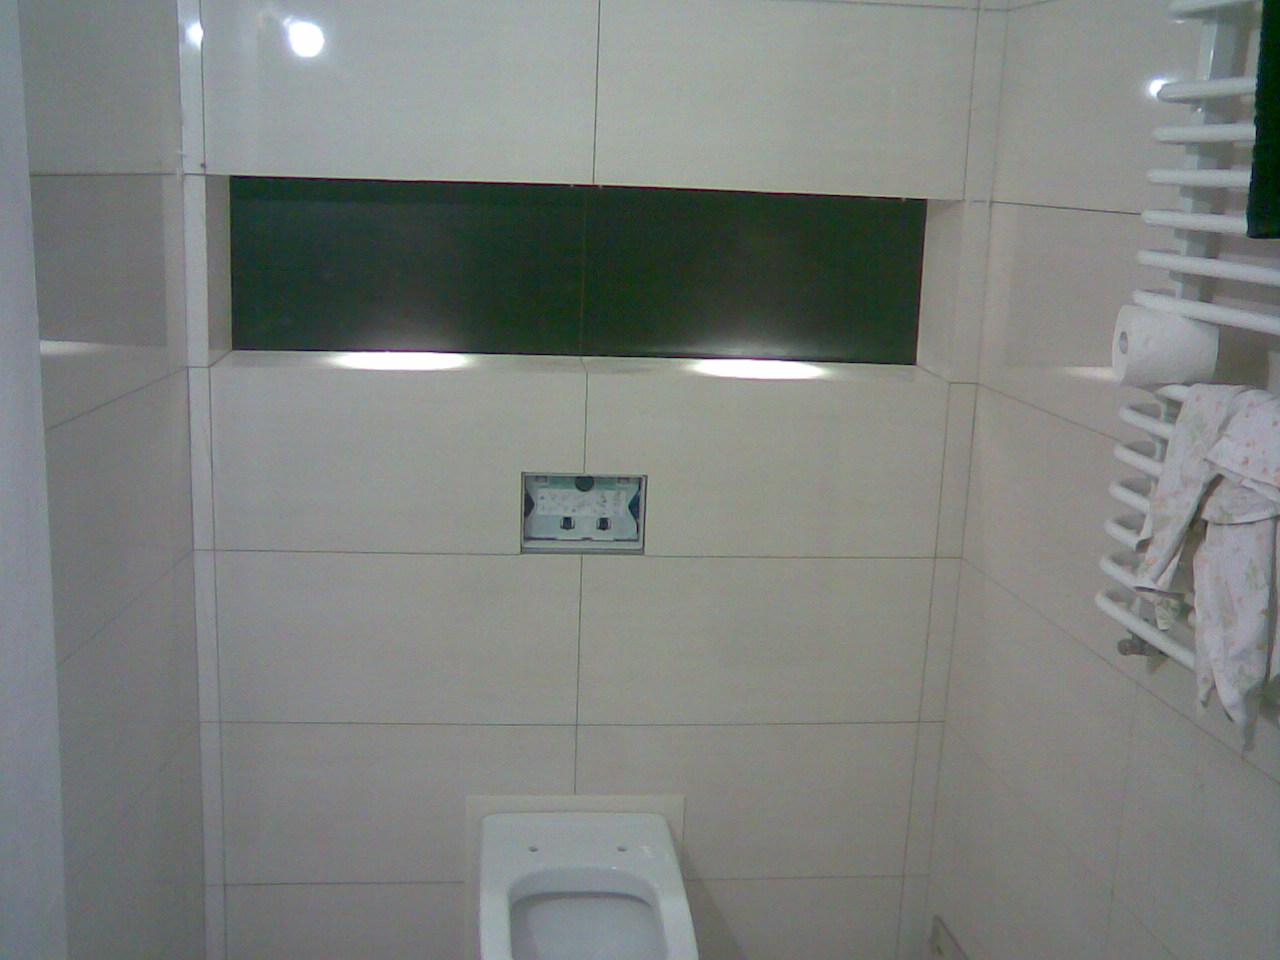 Propozycja zabudowy WC podwieszanego z półką podświetlaną